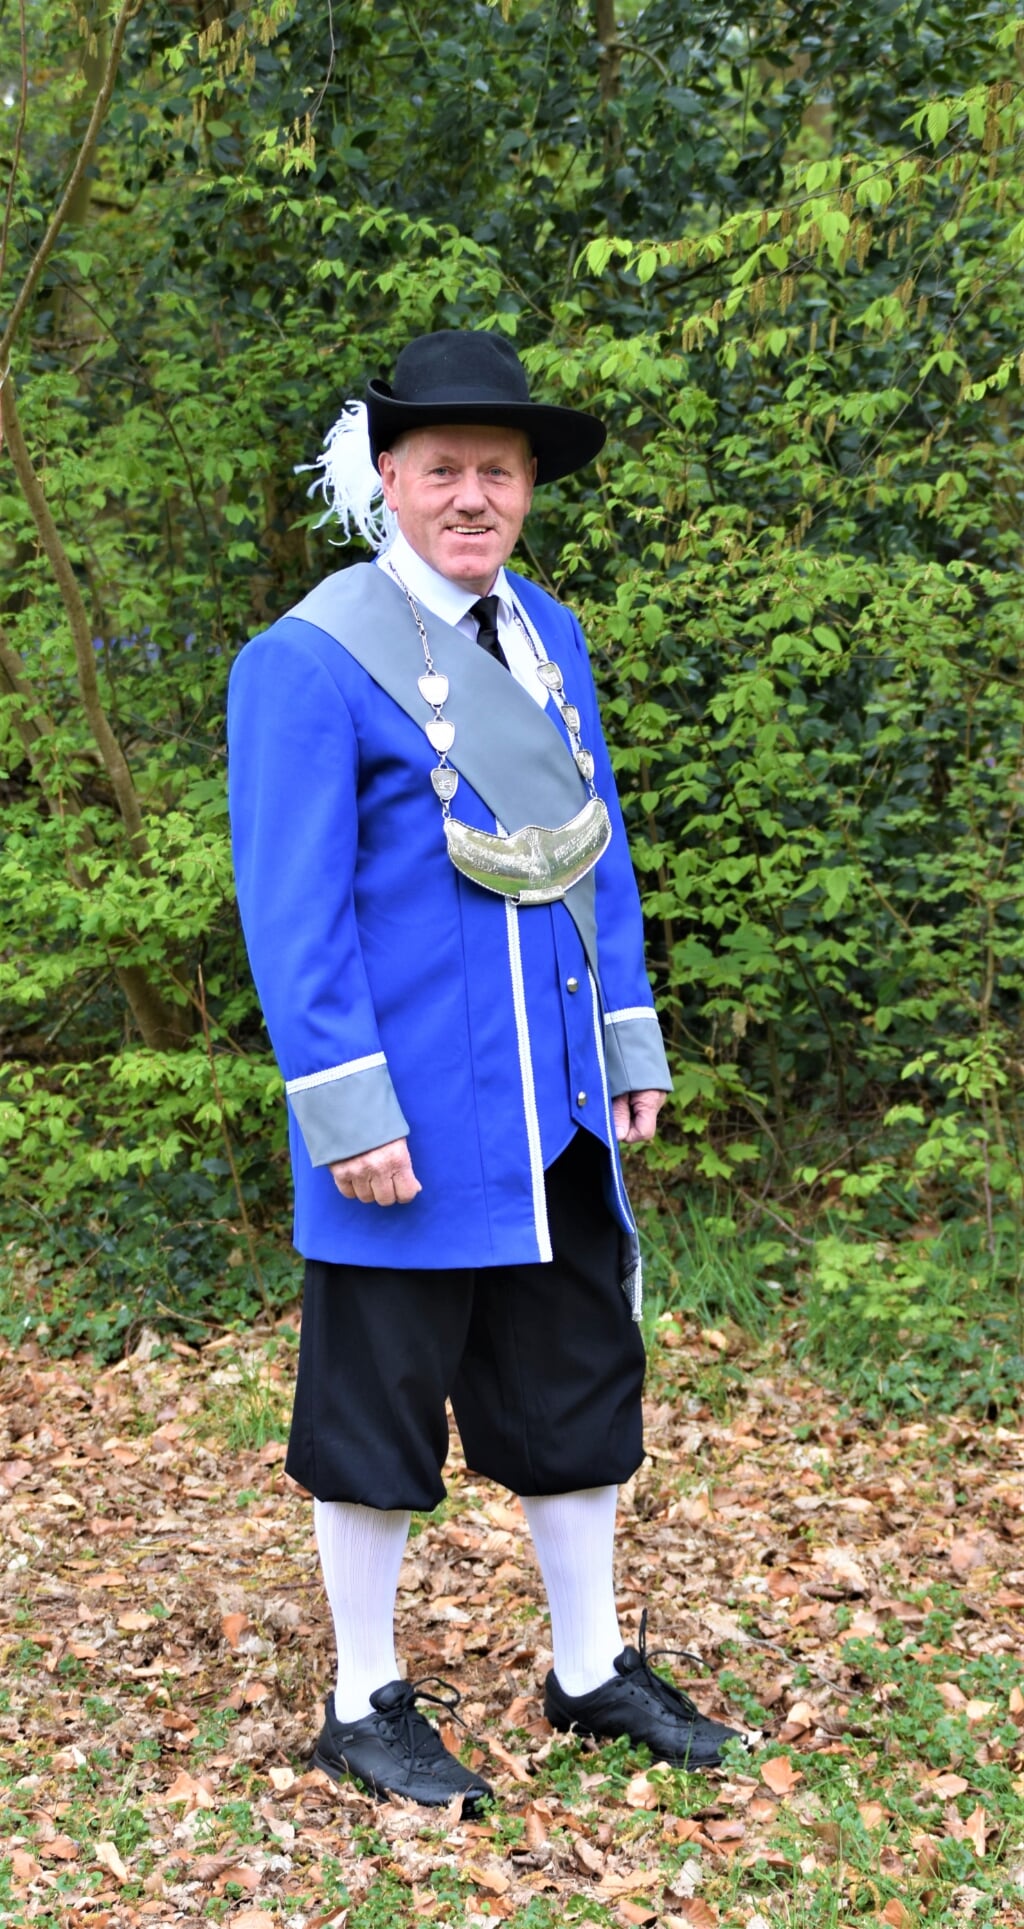 Hoofdman Jos van den Heuvel in het nieuwe kostuum.